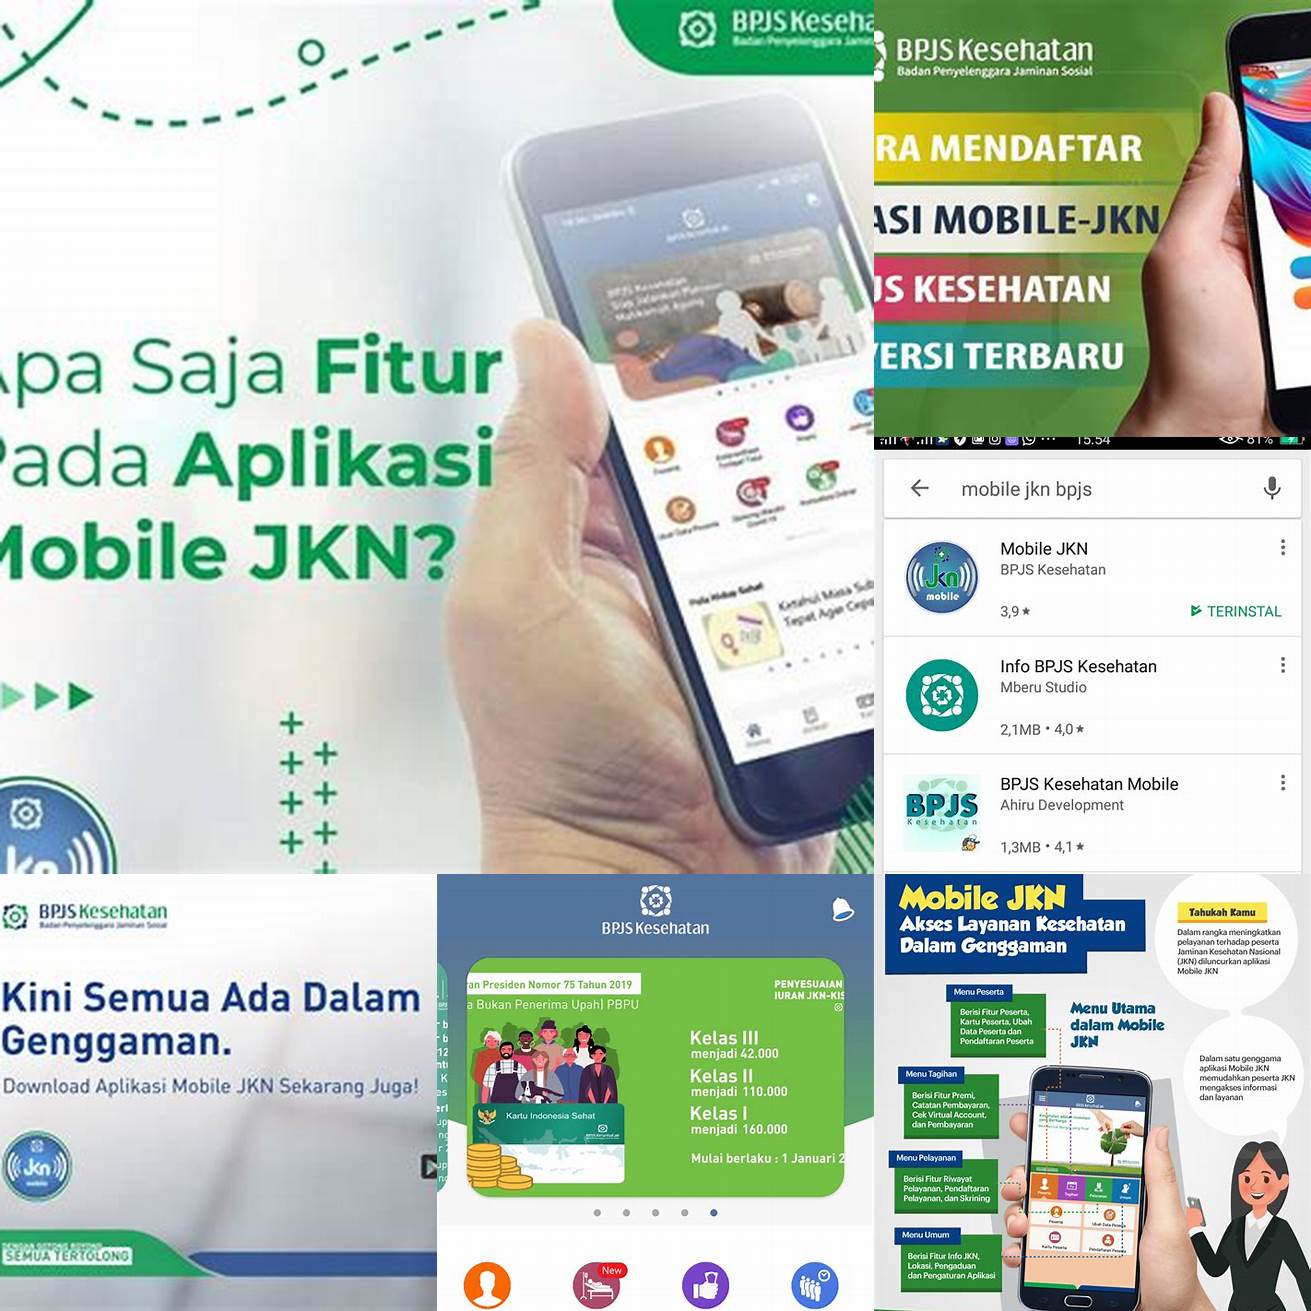 1 Buka aplikasi Mobile JKN di smartphone Anda